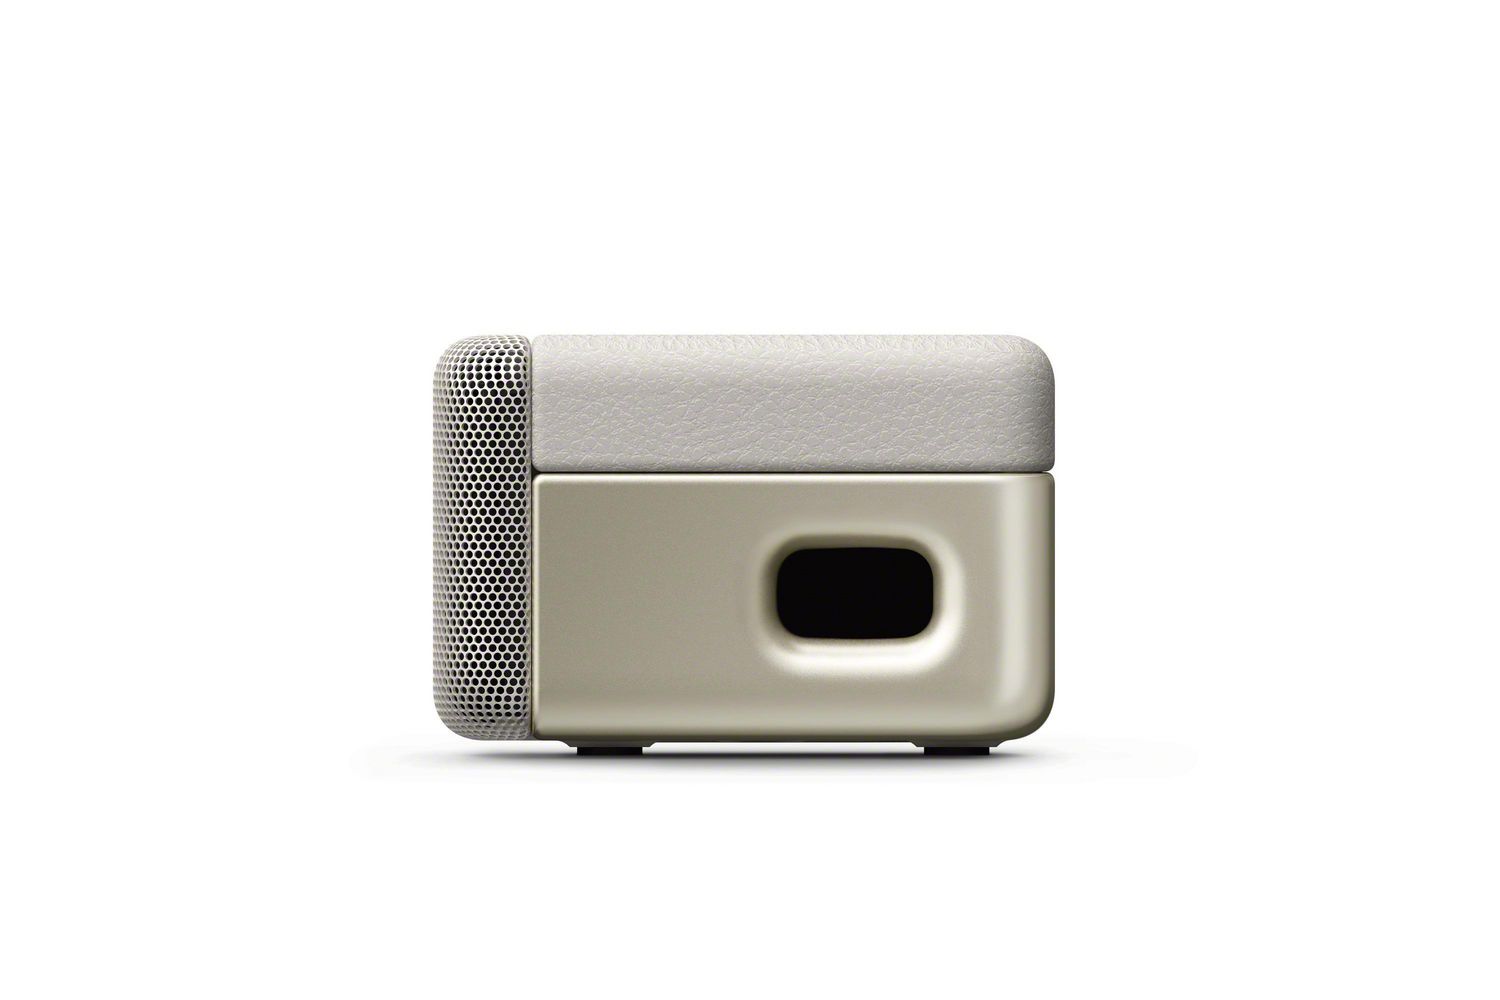 SONY HT-S200F Wireless Bluetooth® Sound Bar